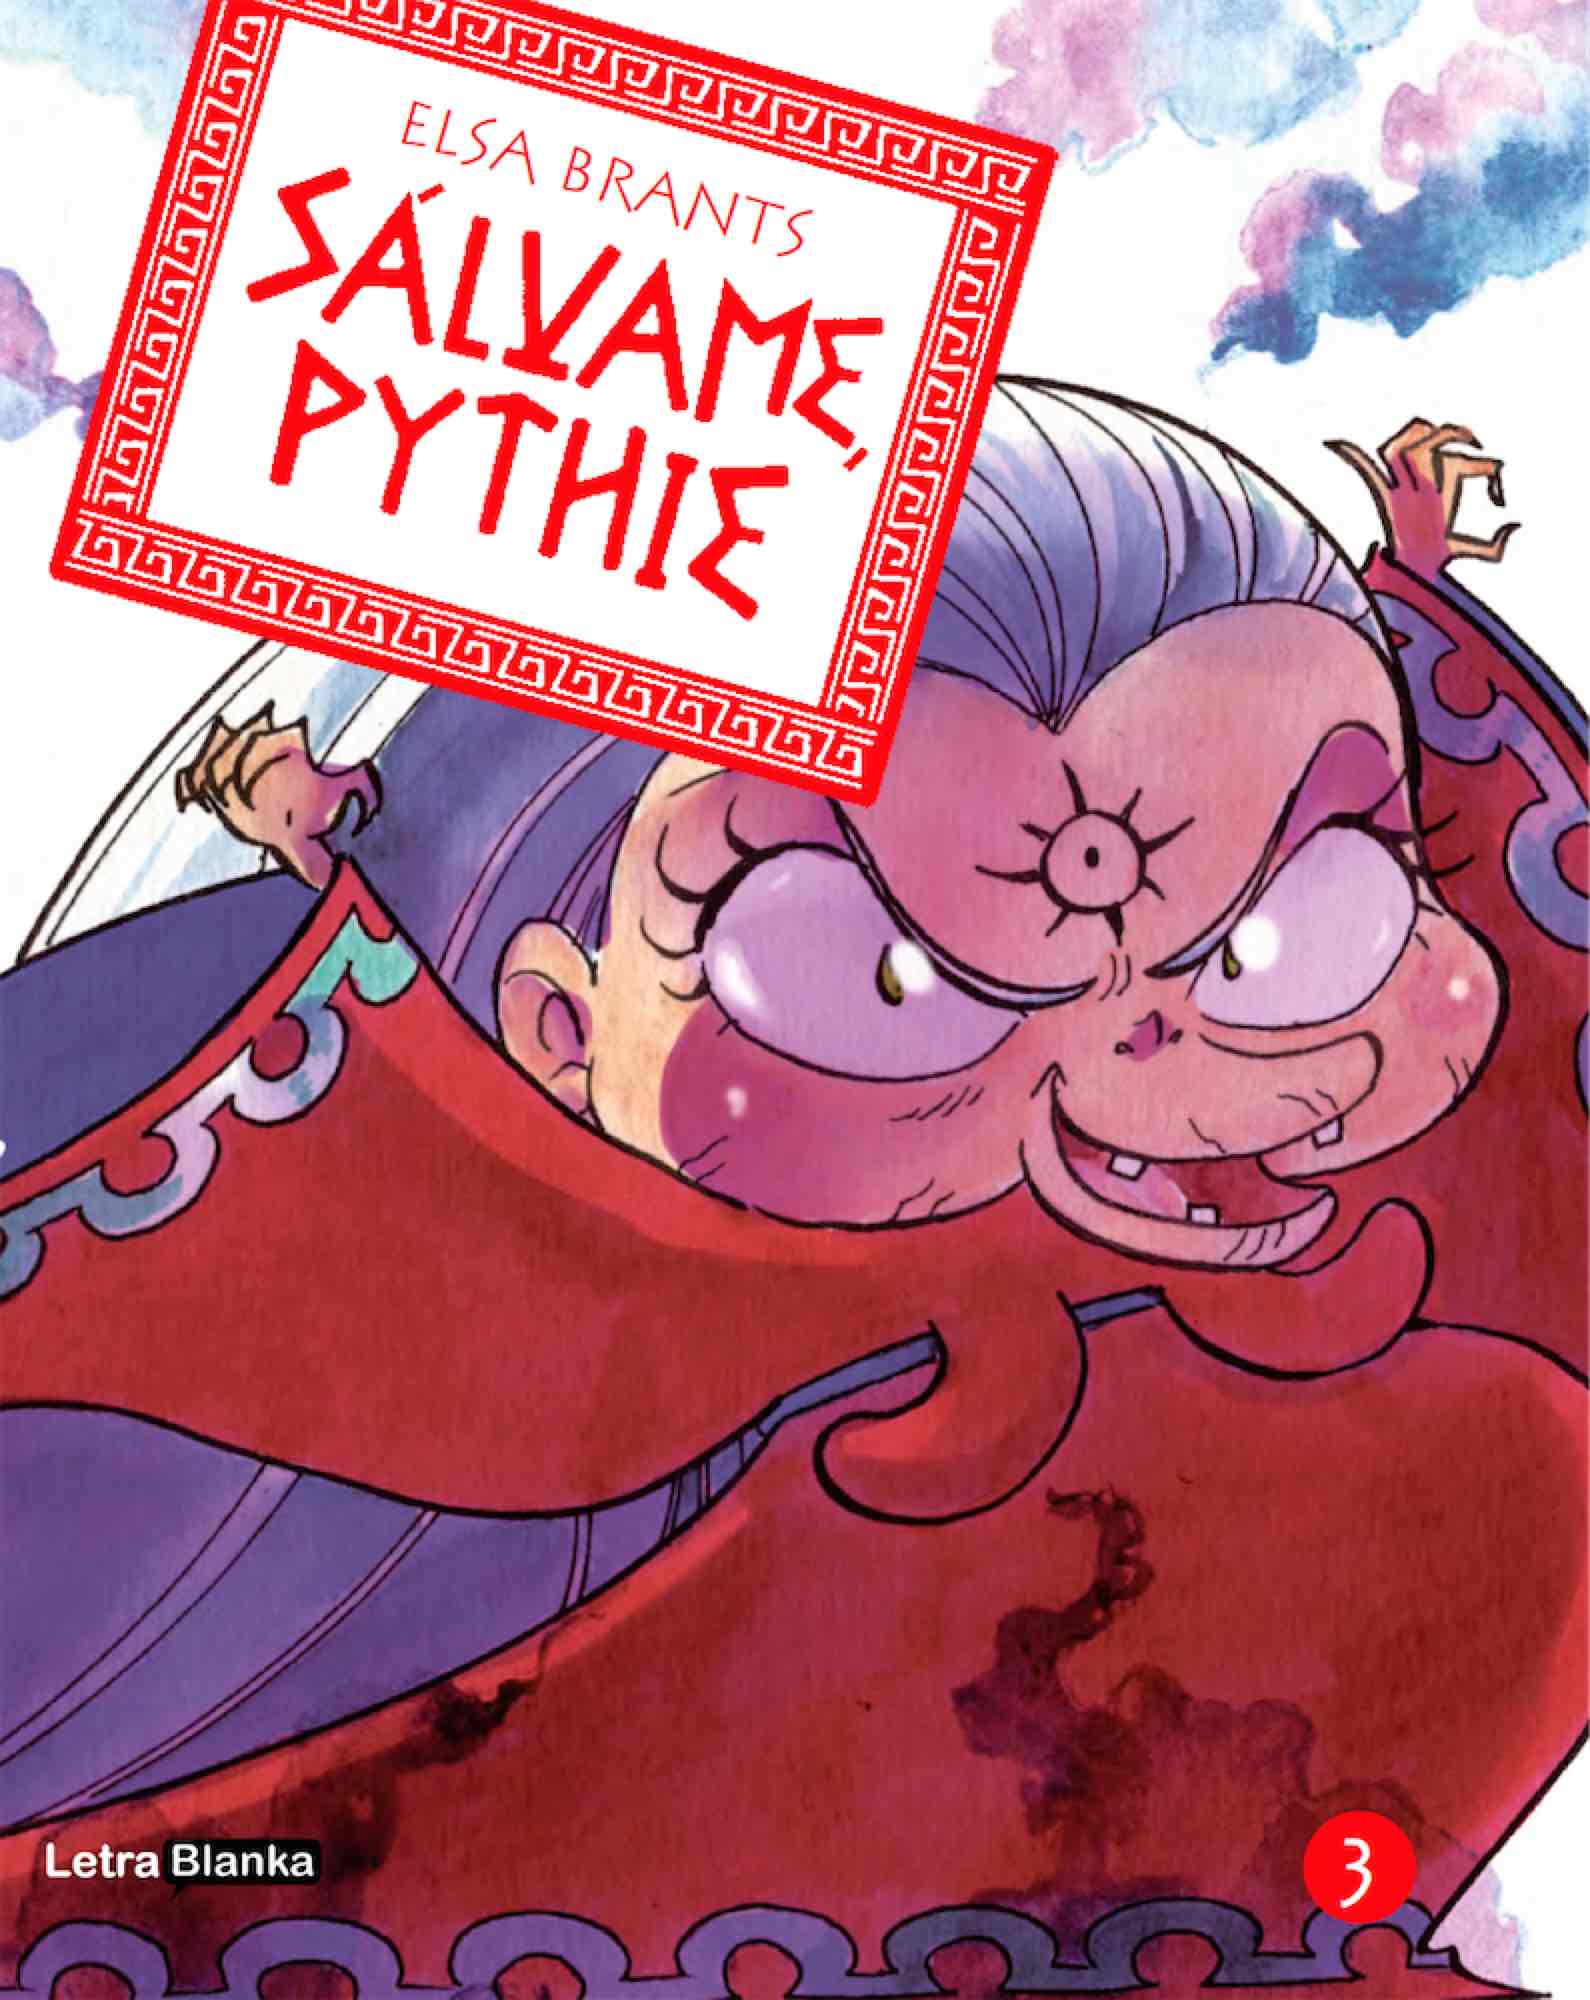 SALVAME, PYTHIE 03